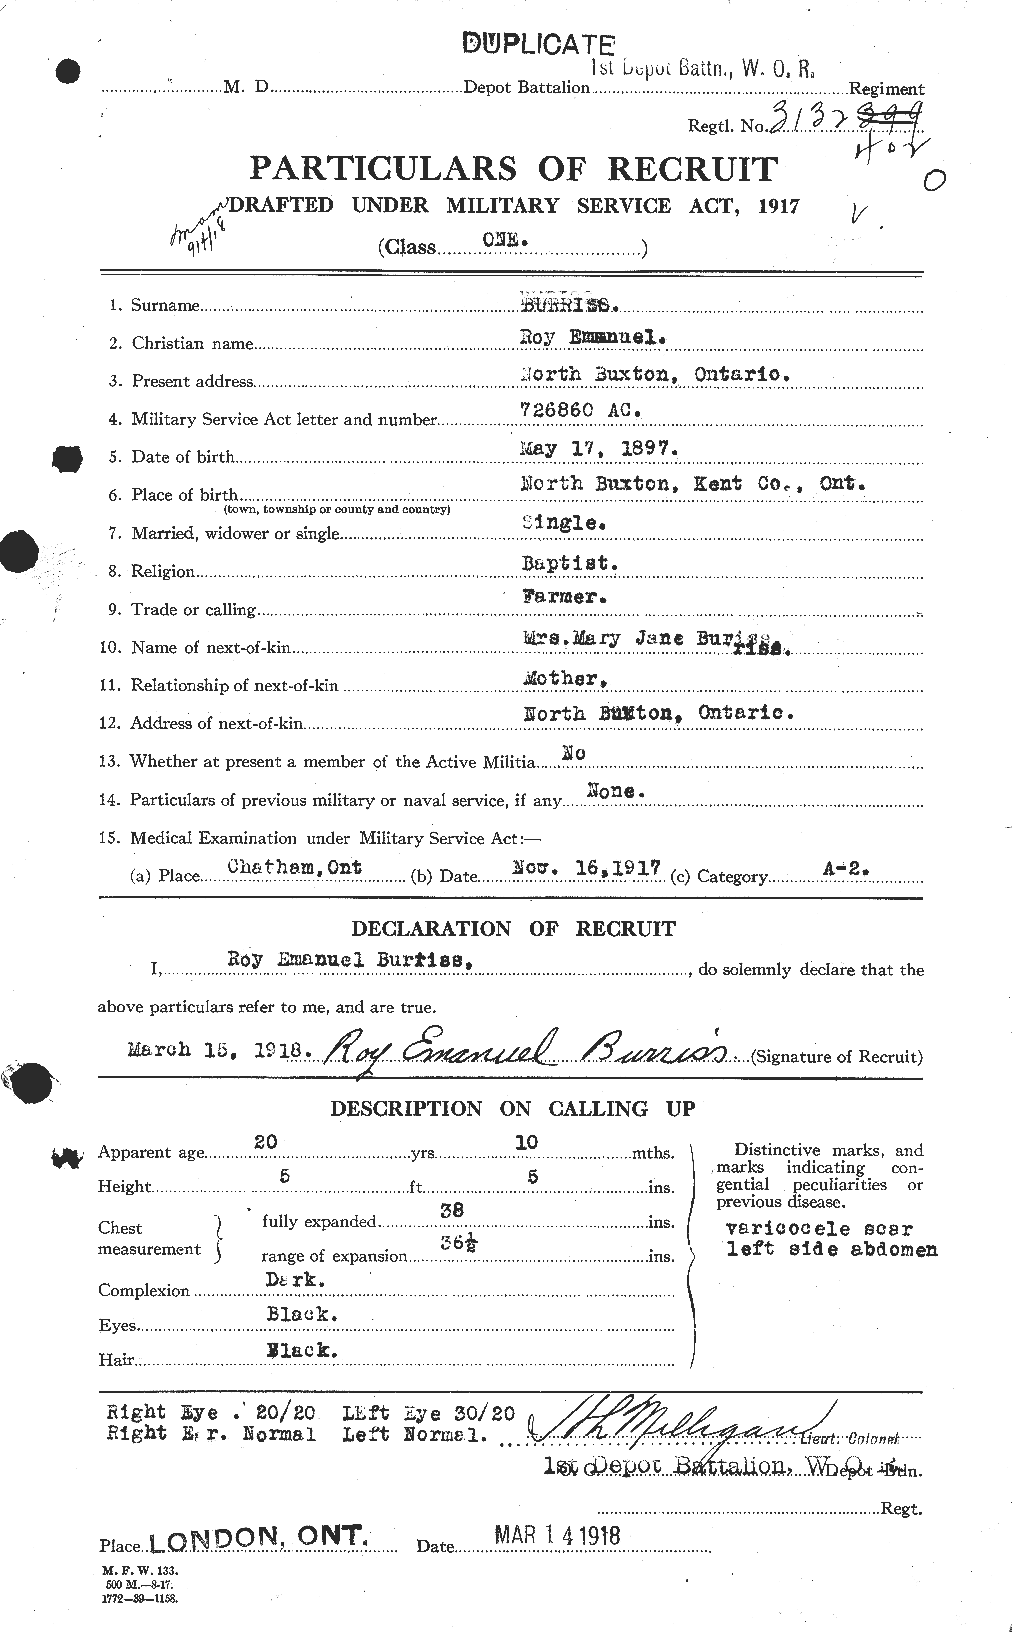 Dossiers du Personnel de la Première Guerre mondiale - CEC 274698a